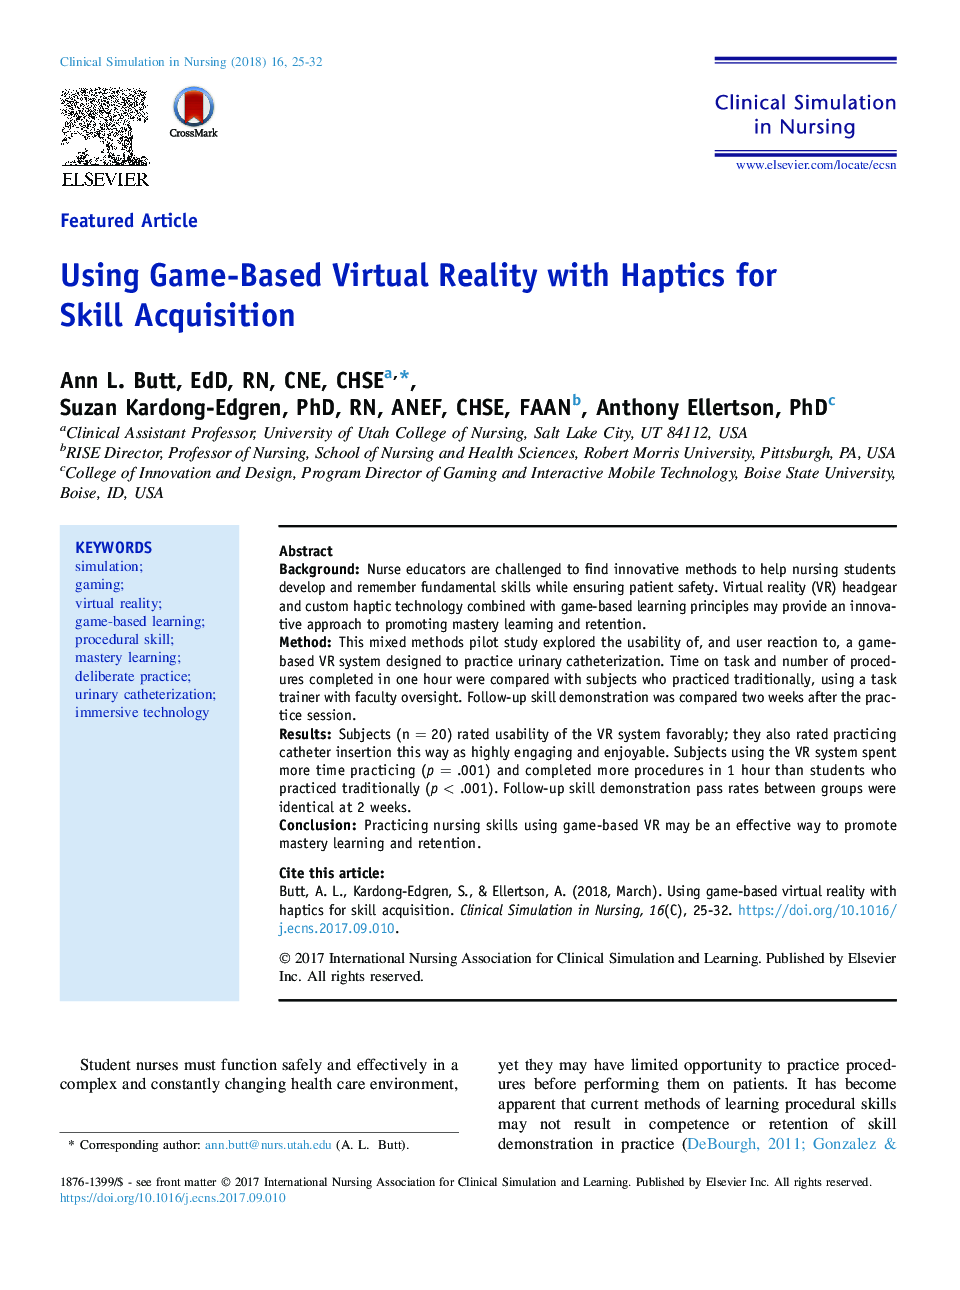 با استفاده از واقعیت مجازی مبتنی بر بازی با ابهام برای جذب مهارت 